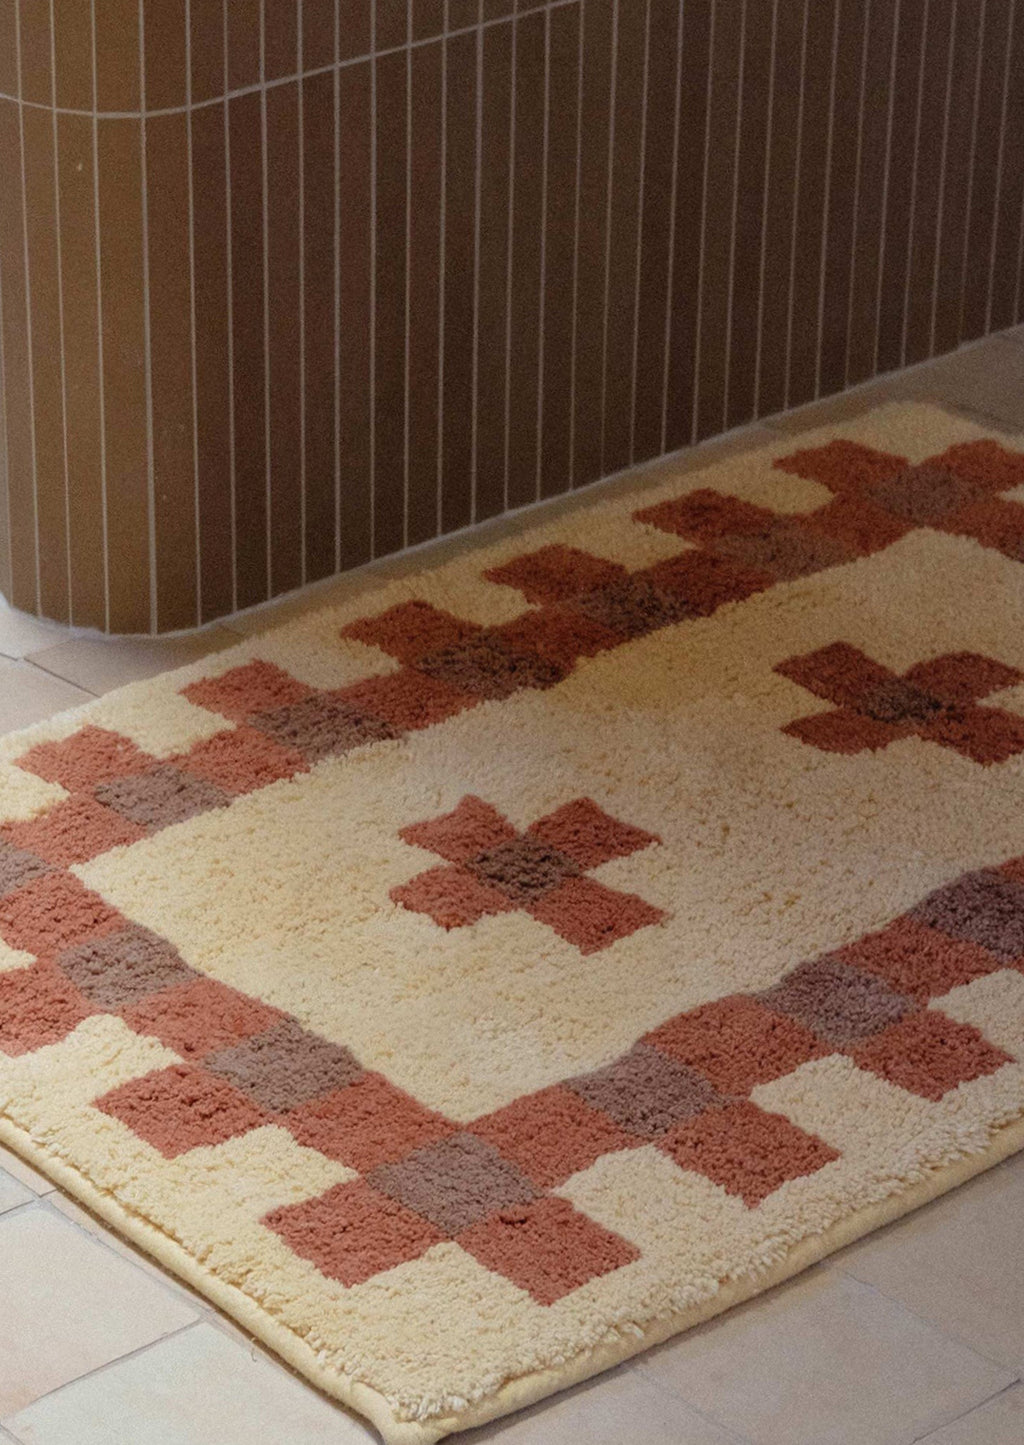 2: A bath mat in geometric cross print in peach, terracotta and brown.